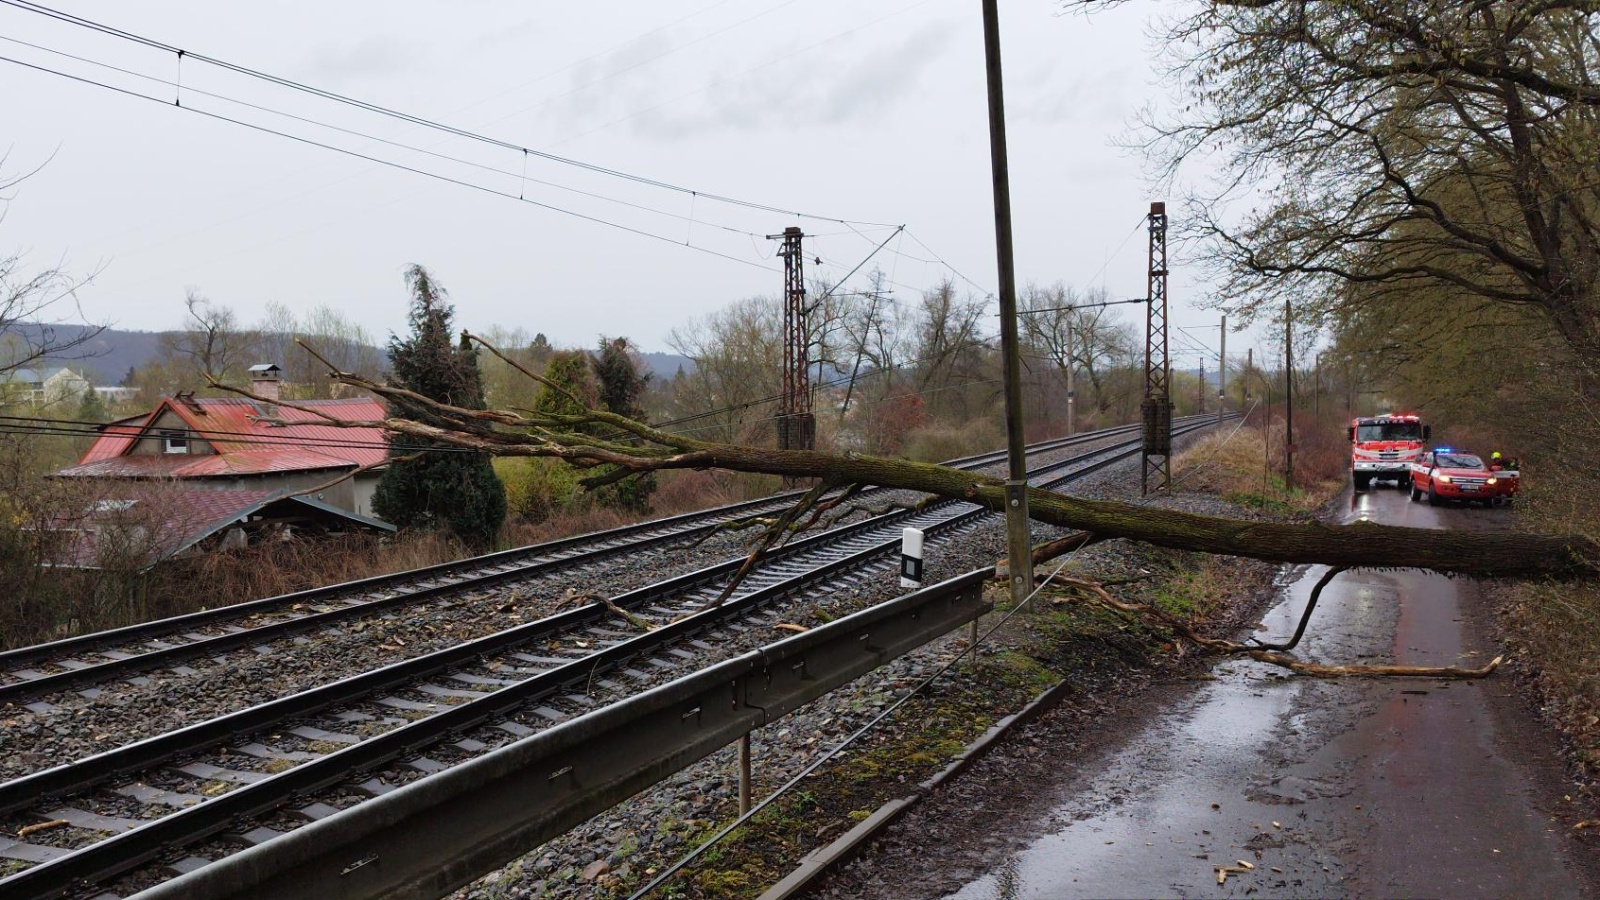 070-Pád stromu do železniční trati u chatové oblasti mezi Dobřichovicemi a Řevnicemi.jpg